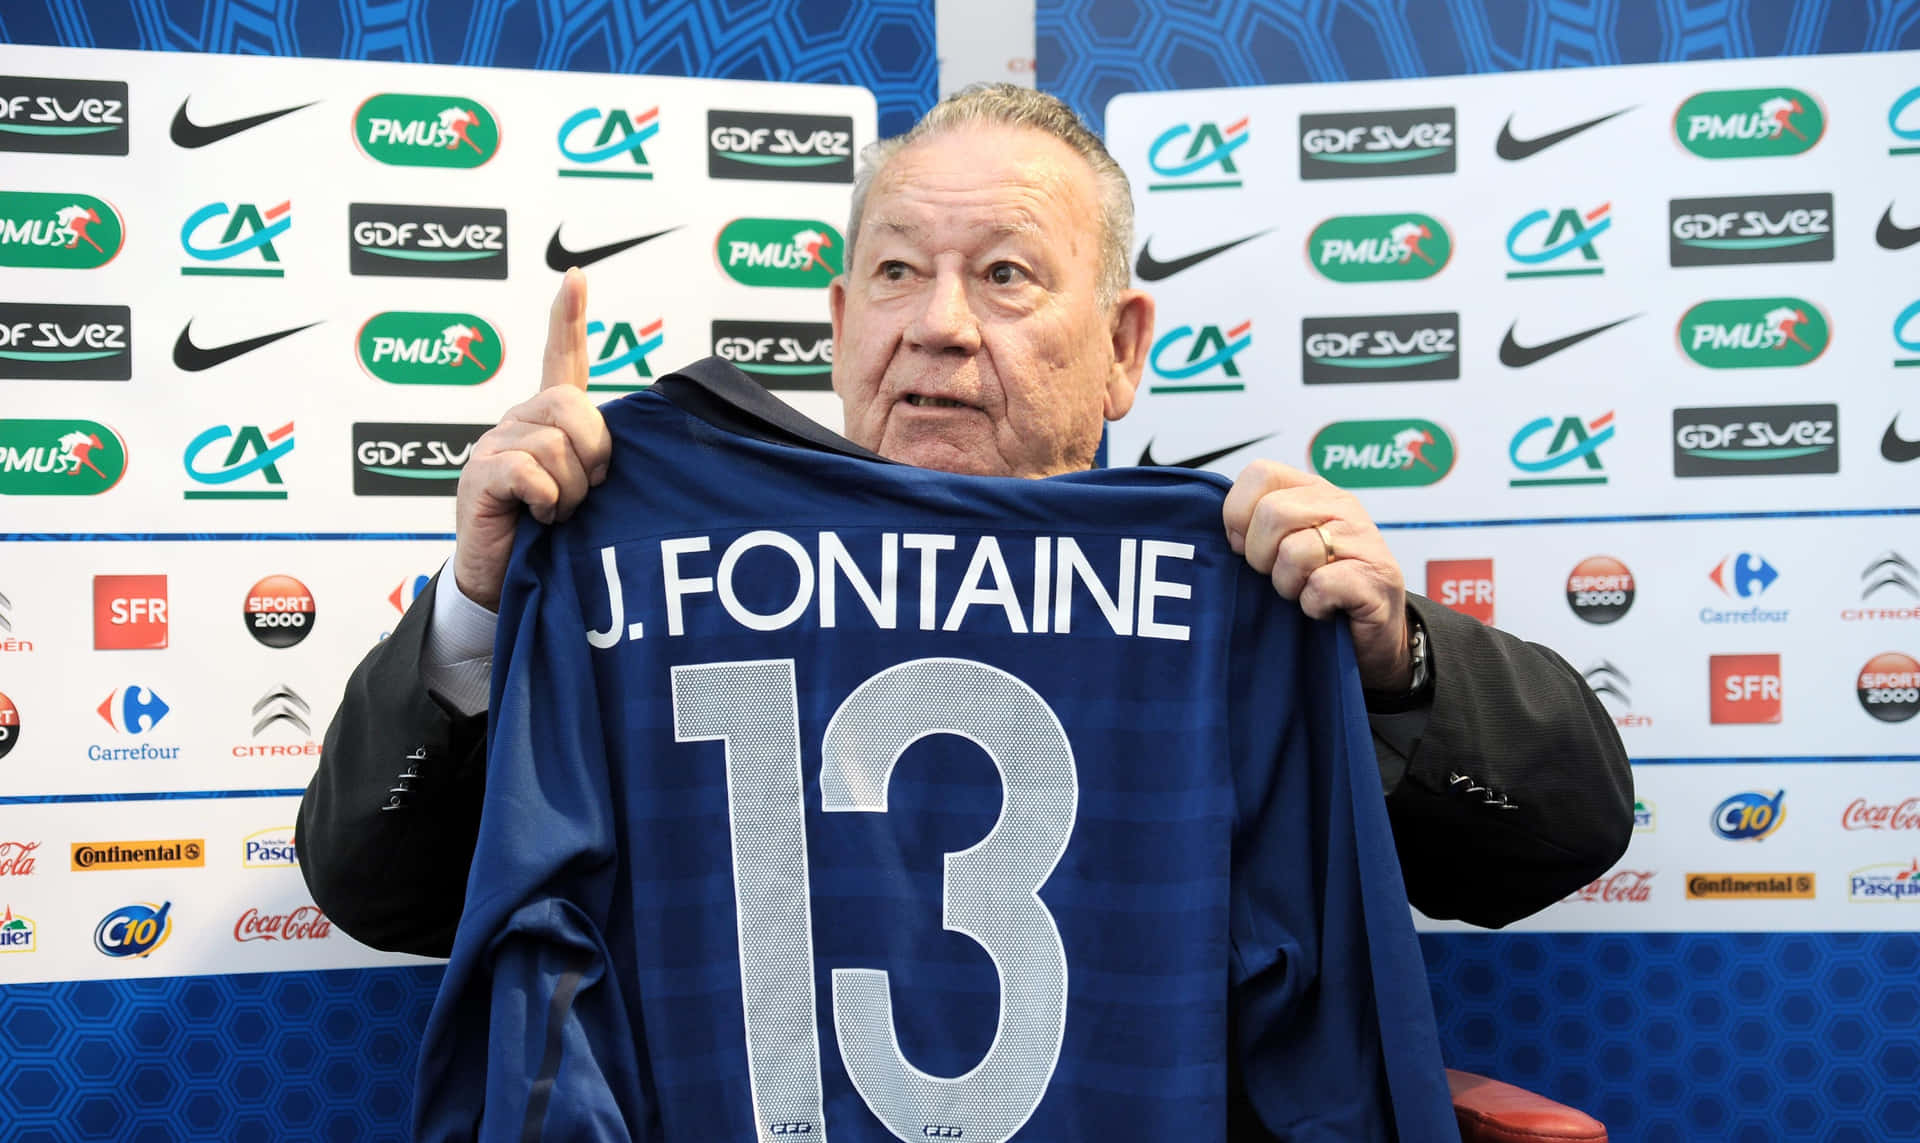 Franskeföre Detta Fotbollsspelaren Just Fontaine Tröjnummer 13. Wallpaper